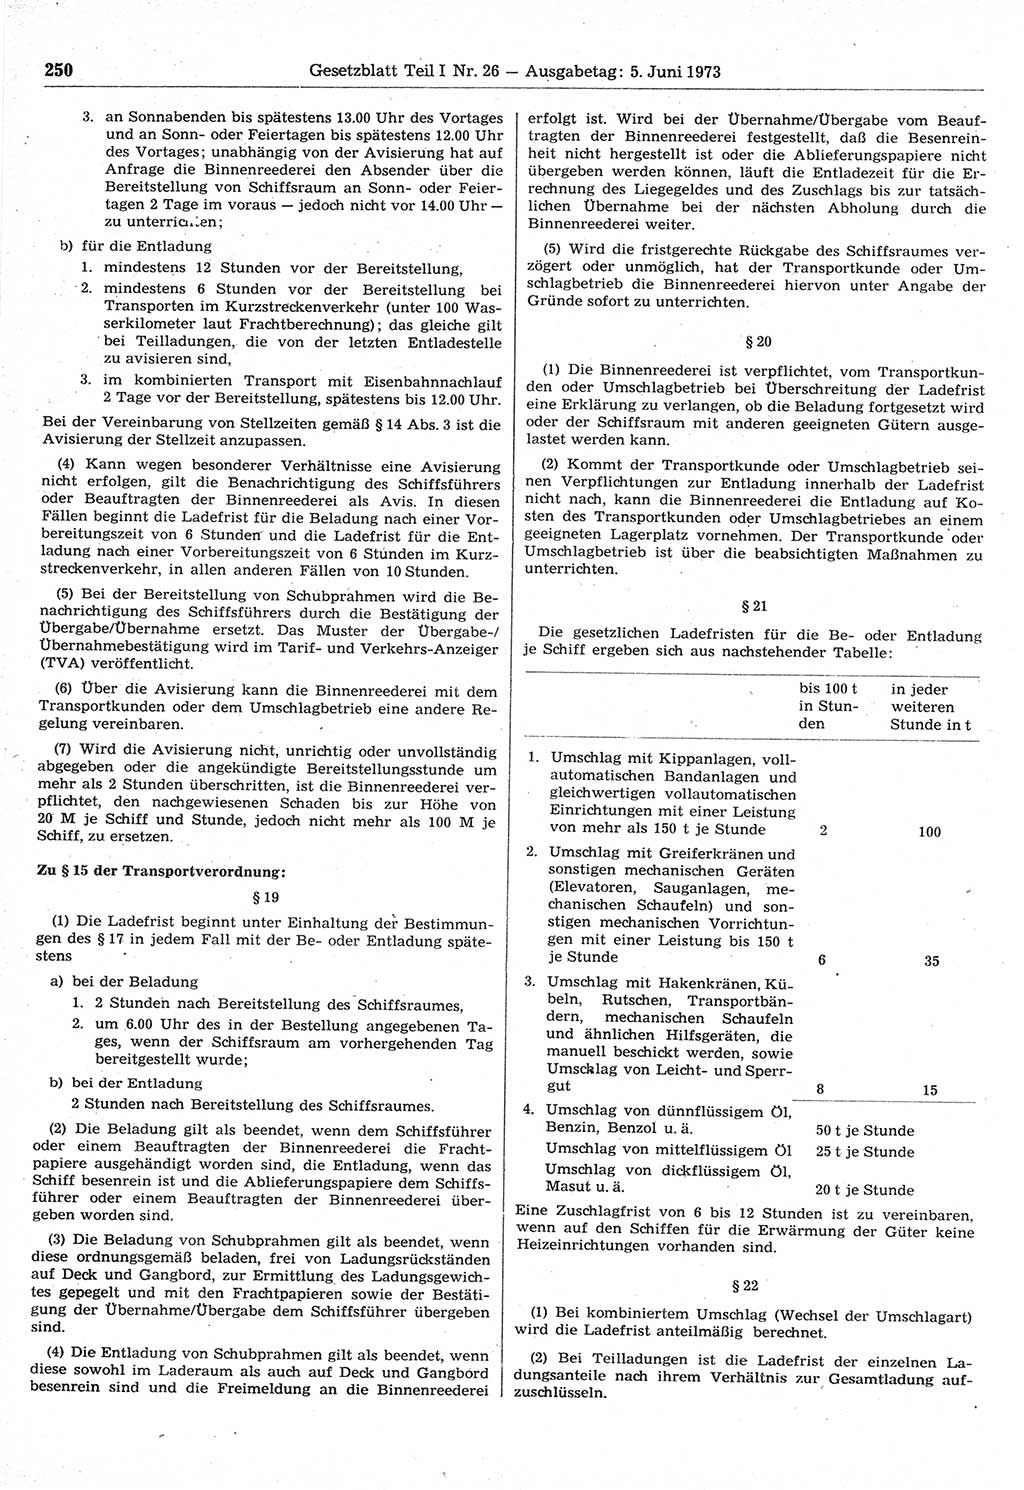 Gesetzblatt (GBl.) der Deutschen Demokratischen Republik (DDR) Teil Ⅰ 1973, Seite 250 (GBl. DDR Ⅰ 1973, S. 250)